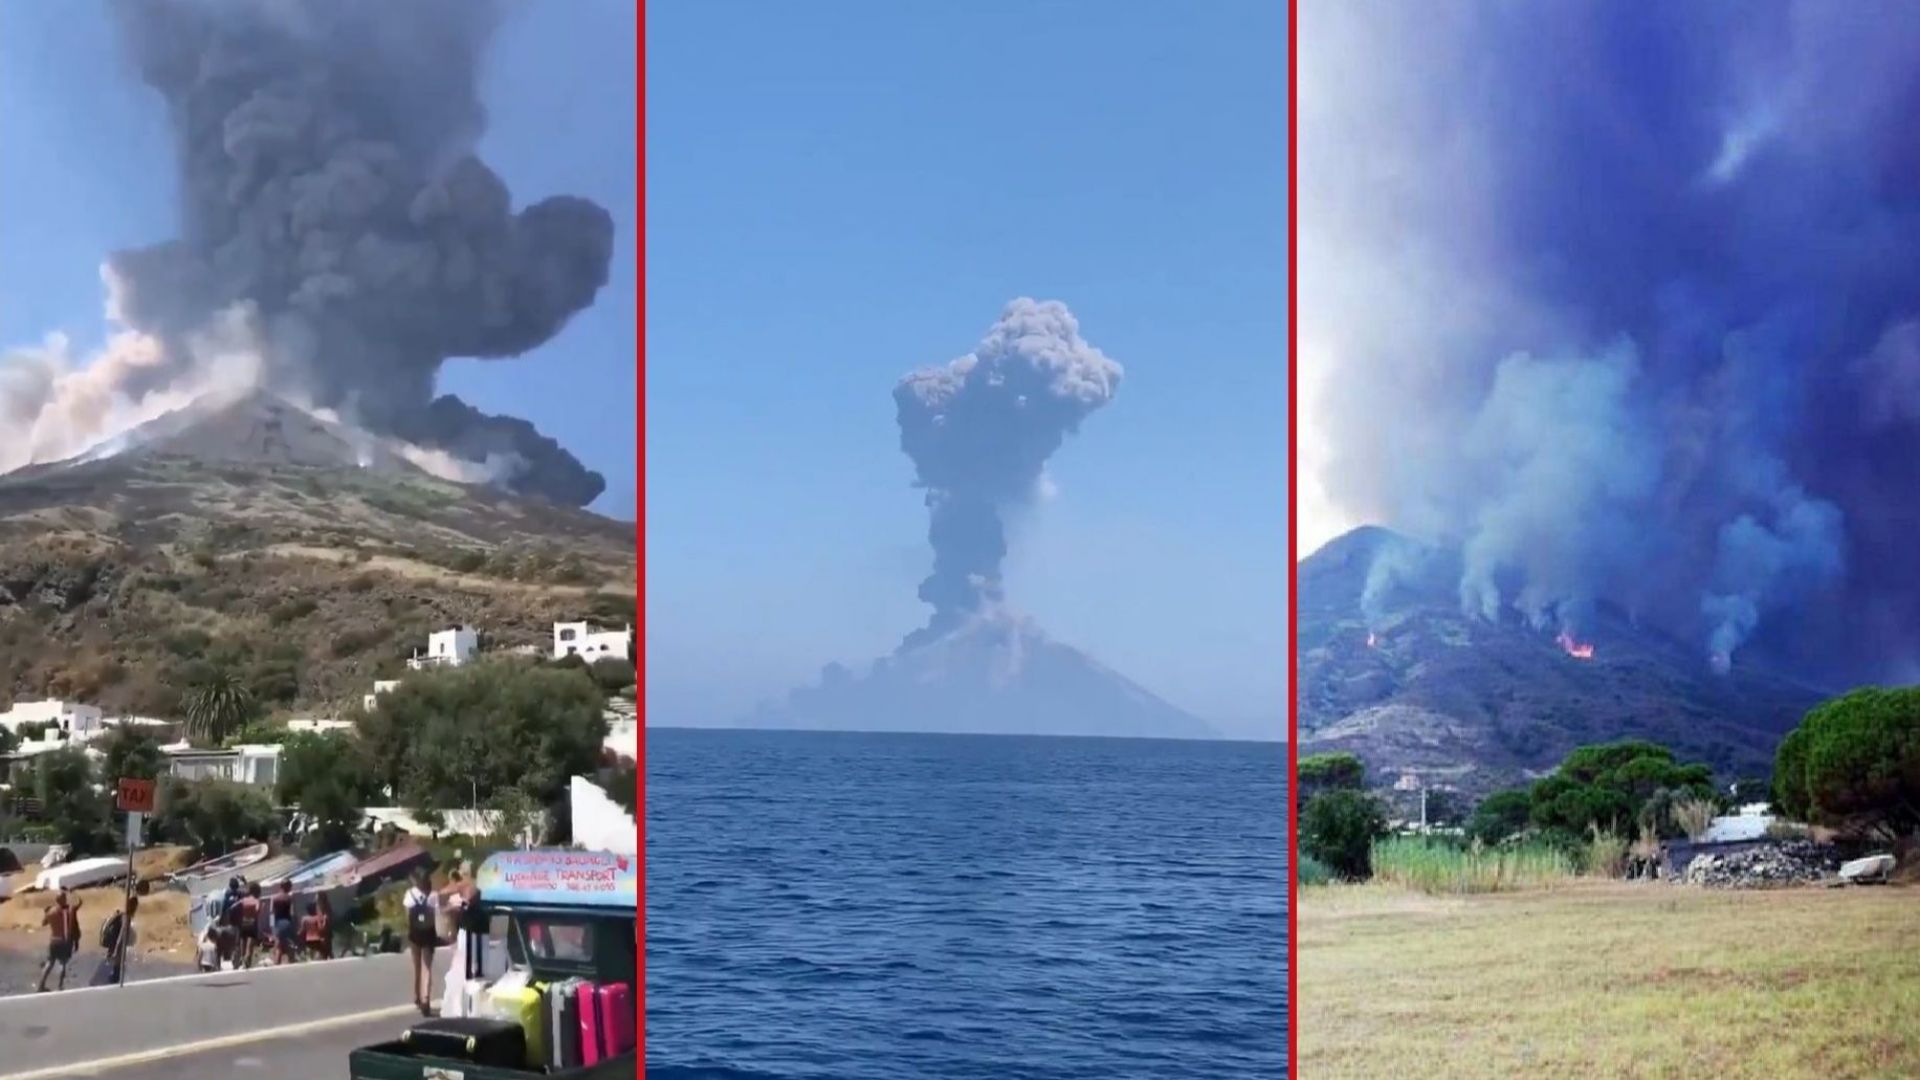 Вулканът на италианския остров Стромболи изригна и предизвика горски пожари